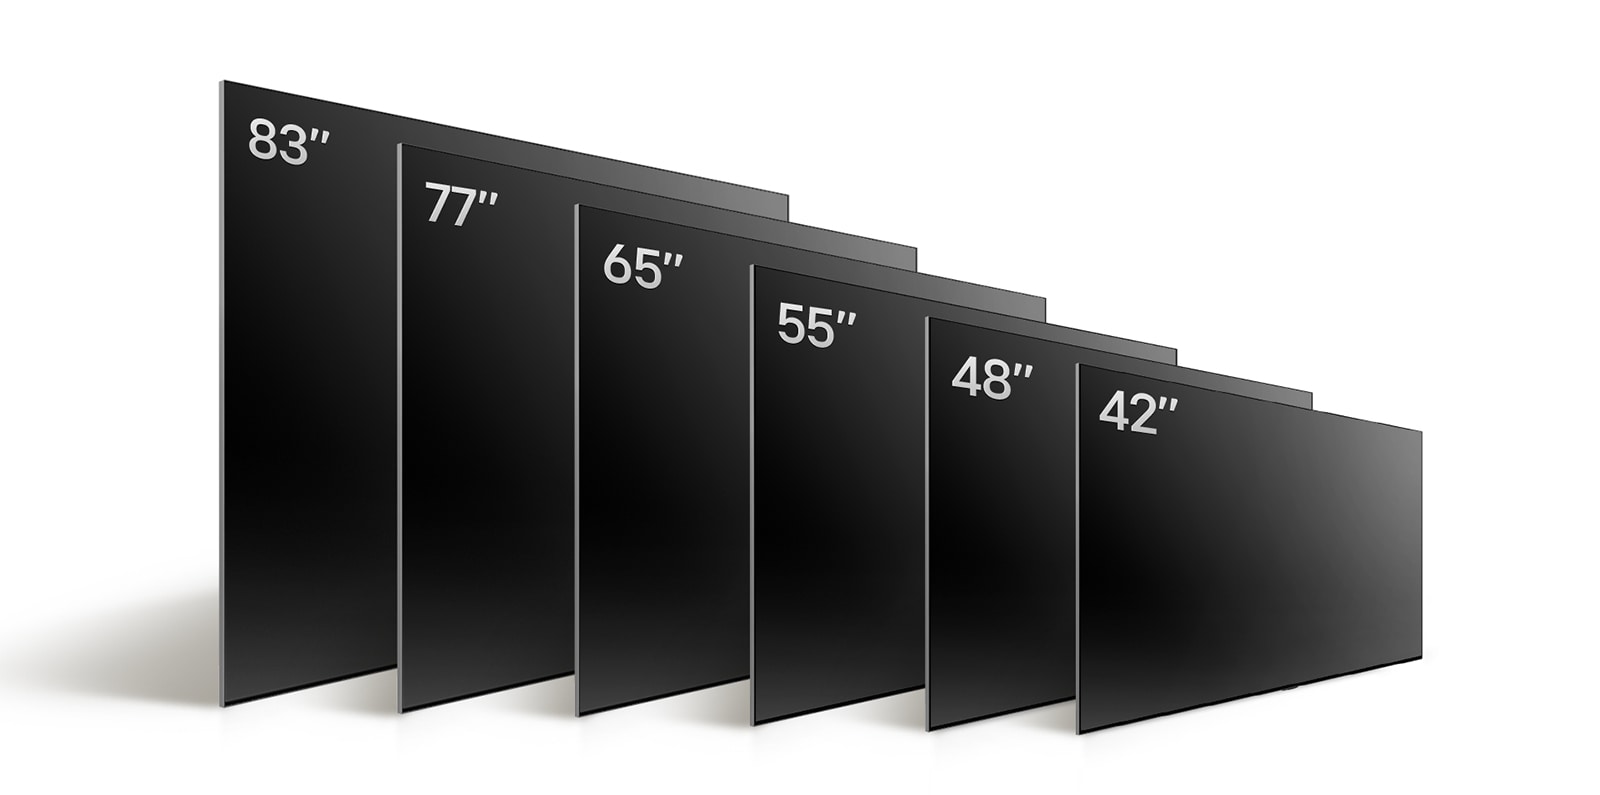 So sánh các kích thước khác nhau của LG OLED TV, OLED C4, trình bày OLED C4 42", OLED 48", OLED C4 55", OLED C4 65", OLED C4 77", và OLED C4 83".